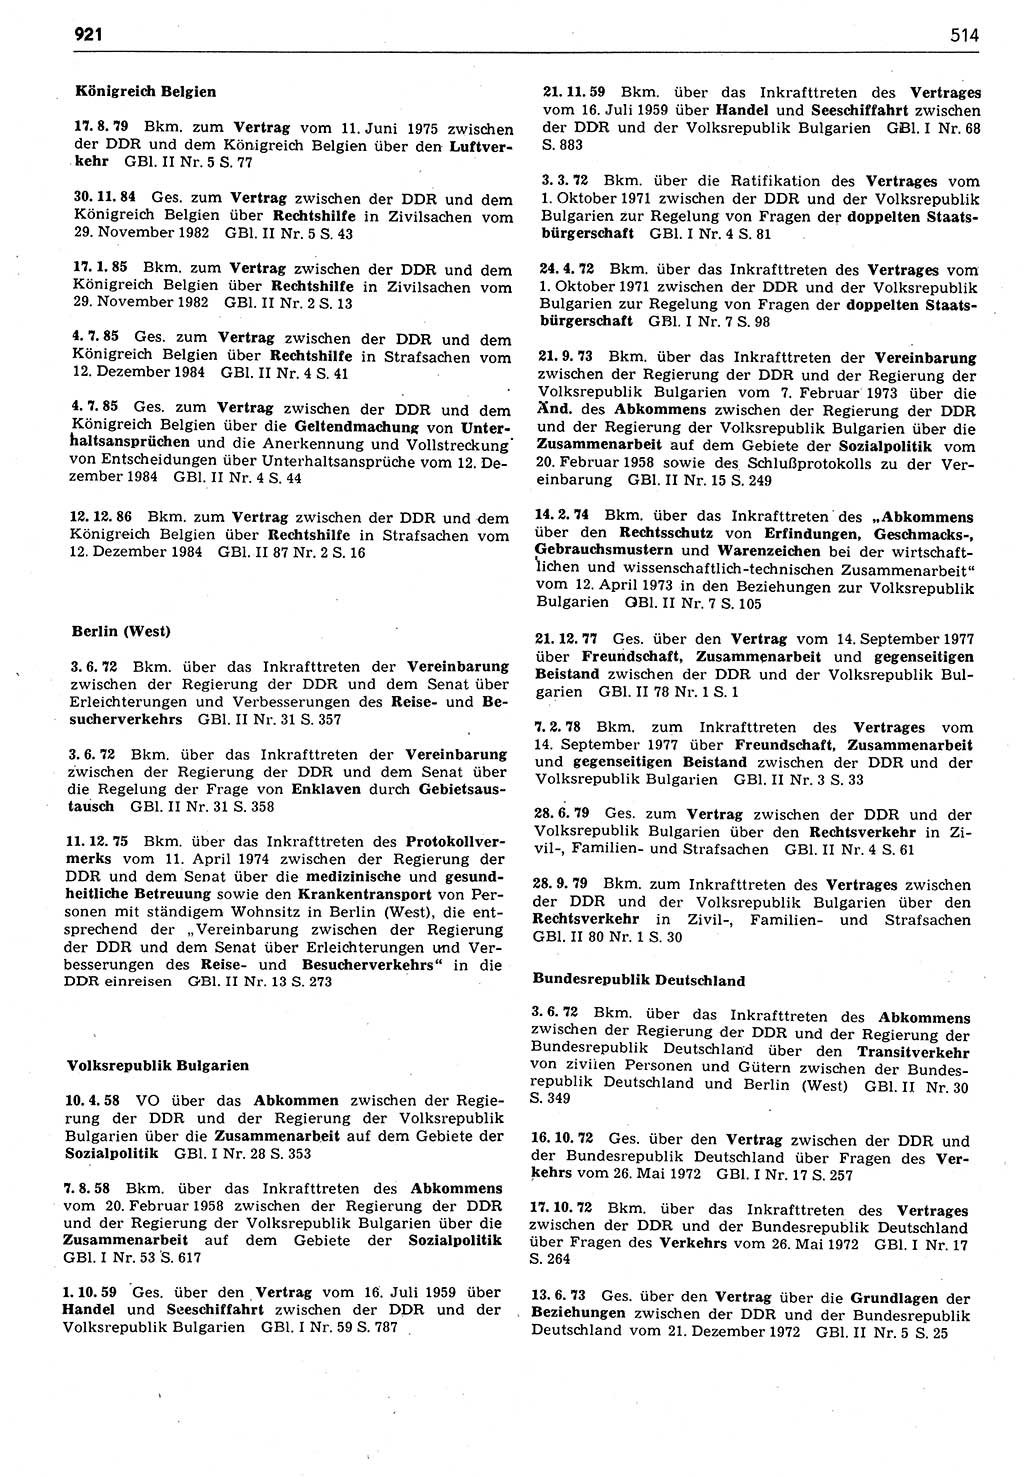 Das geltende Recht der Deutschen Demokratischen Republik (DDR) 1949-1988, Seite 514 (Gelt. R. DDR 1949-1988, S. 514)